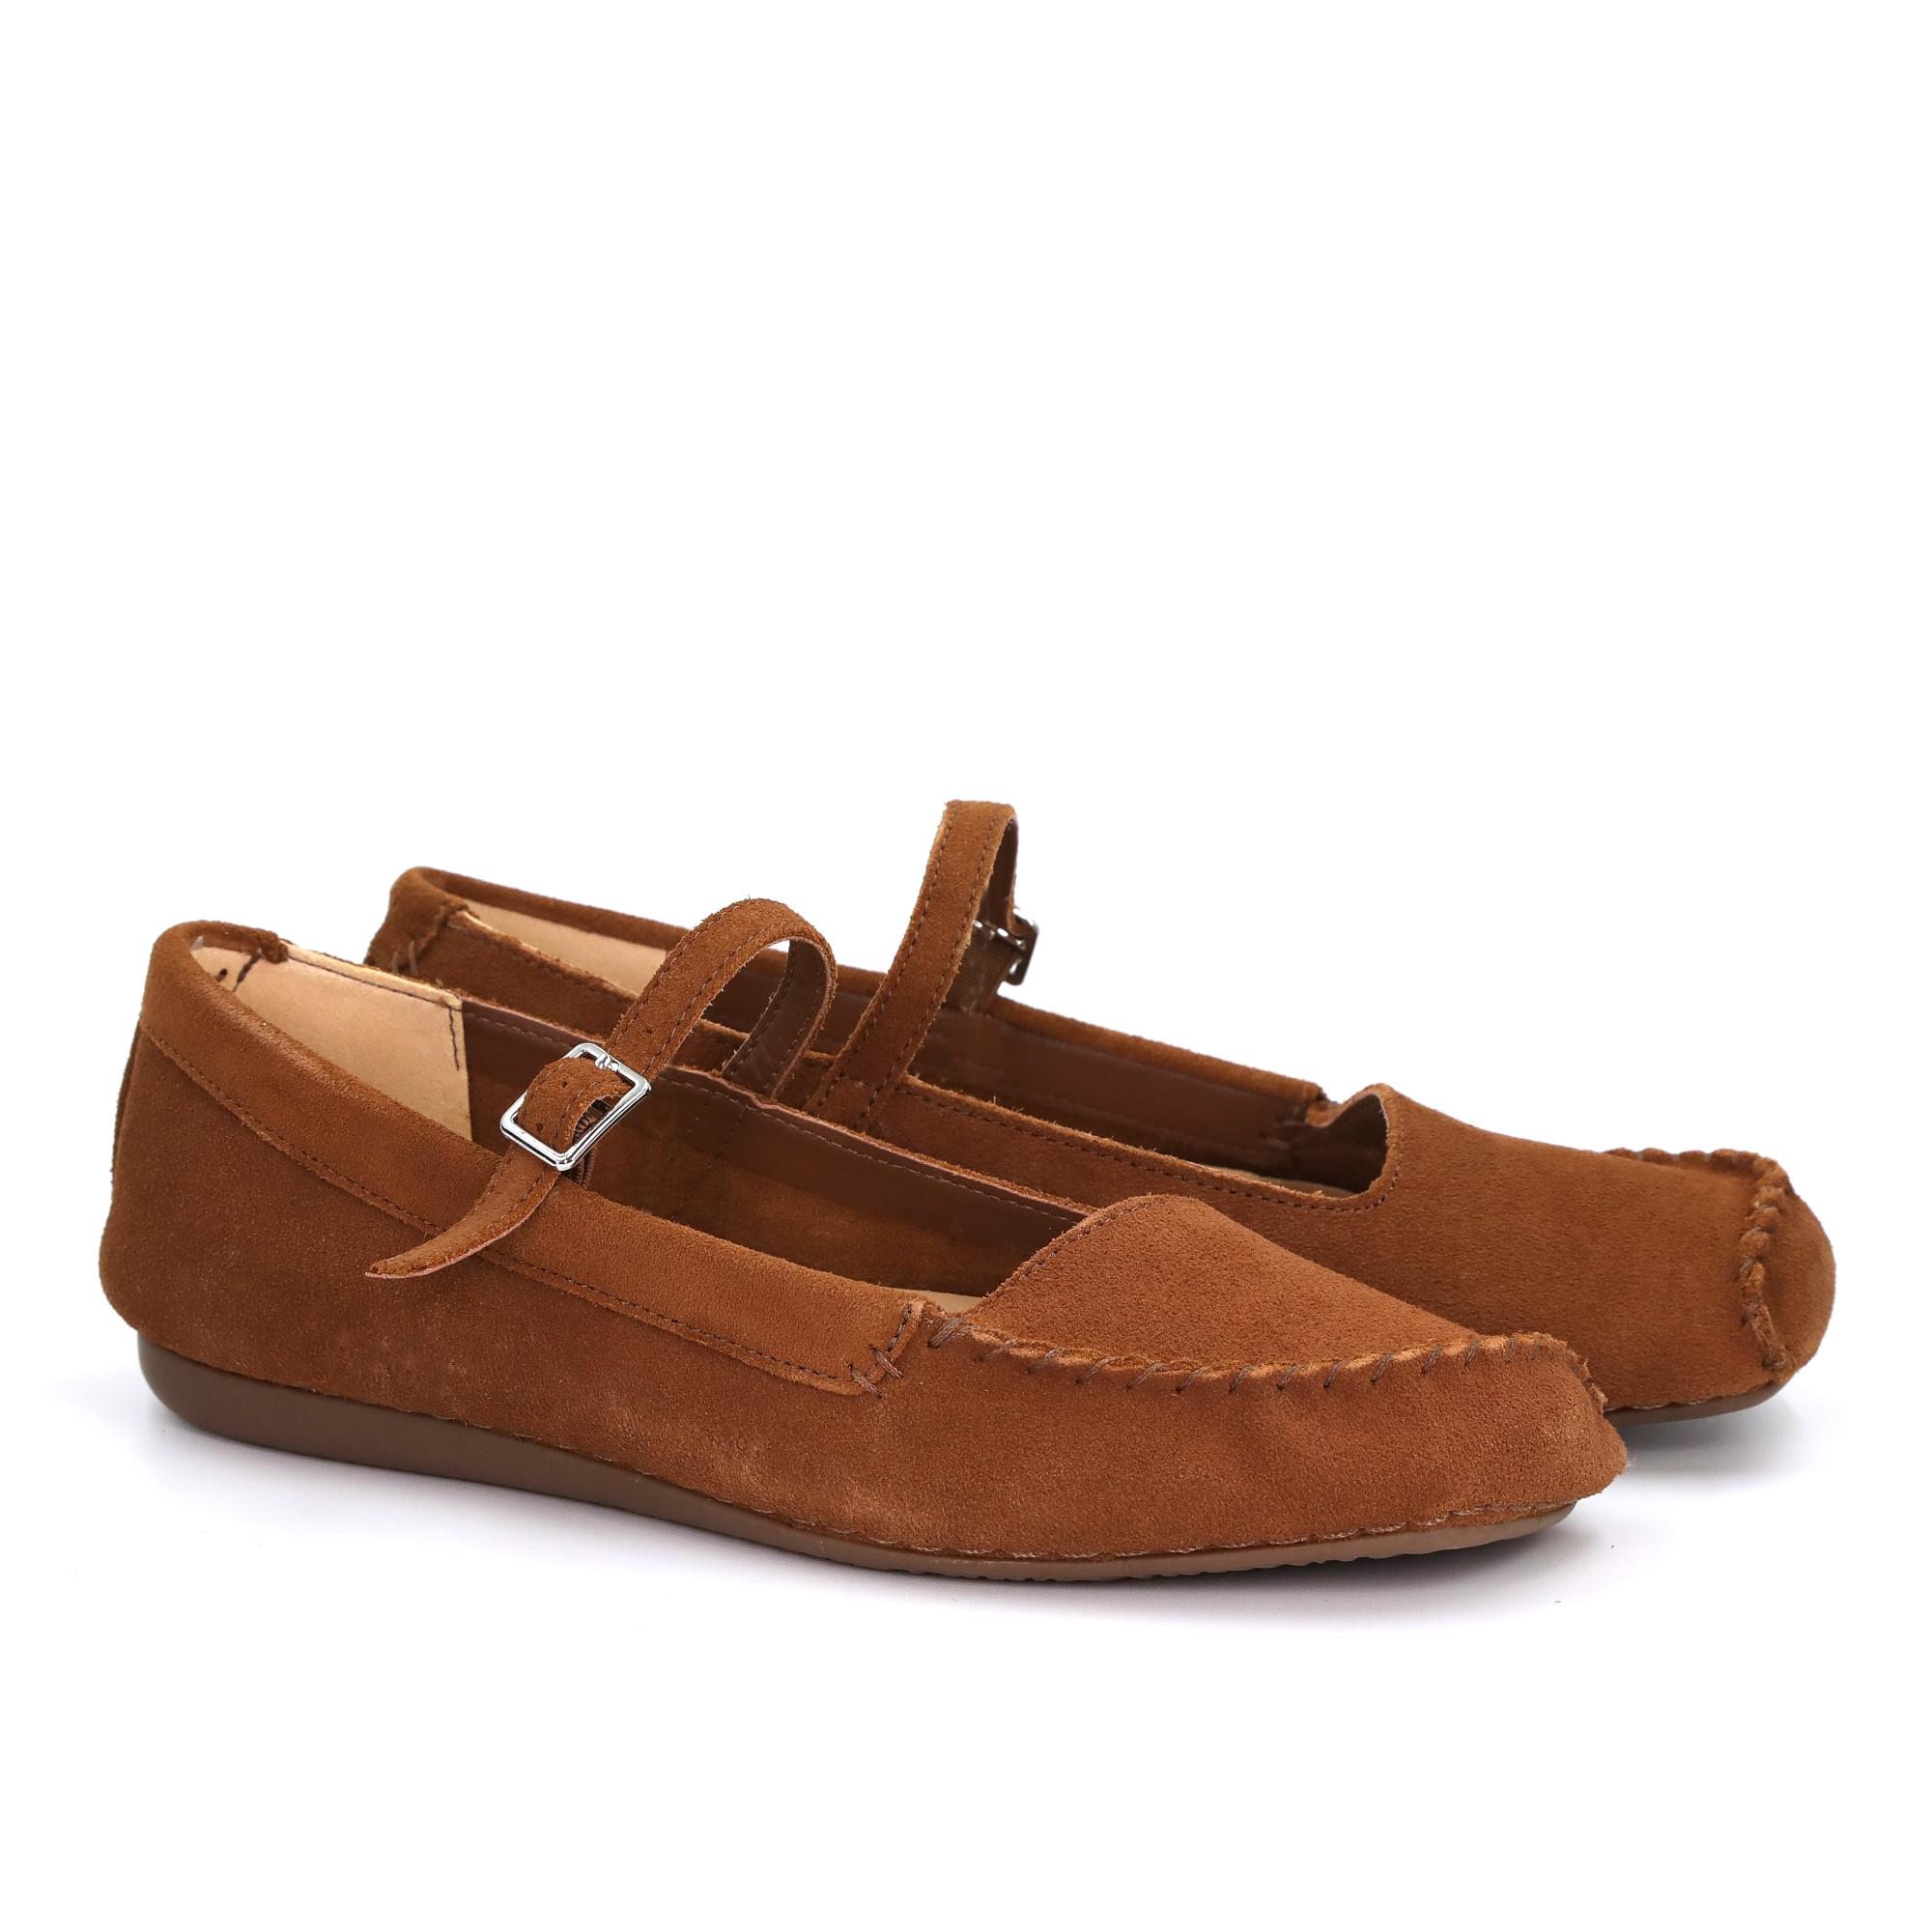 Женские туфли на ремешке Clarks, коричневые, цвет коричневый, размер 36